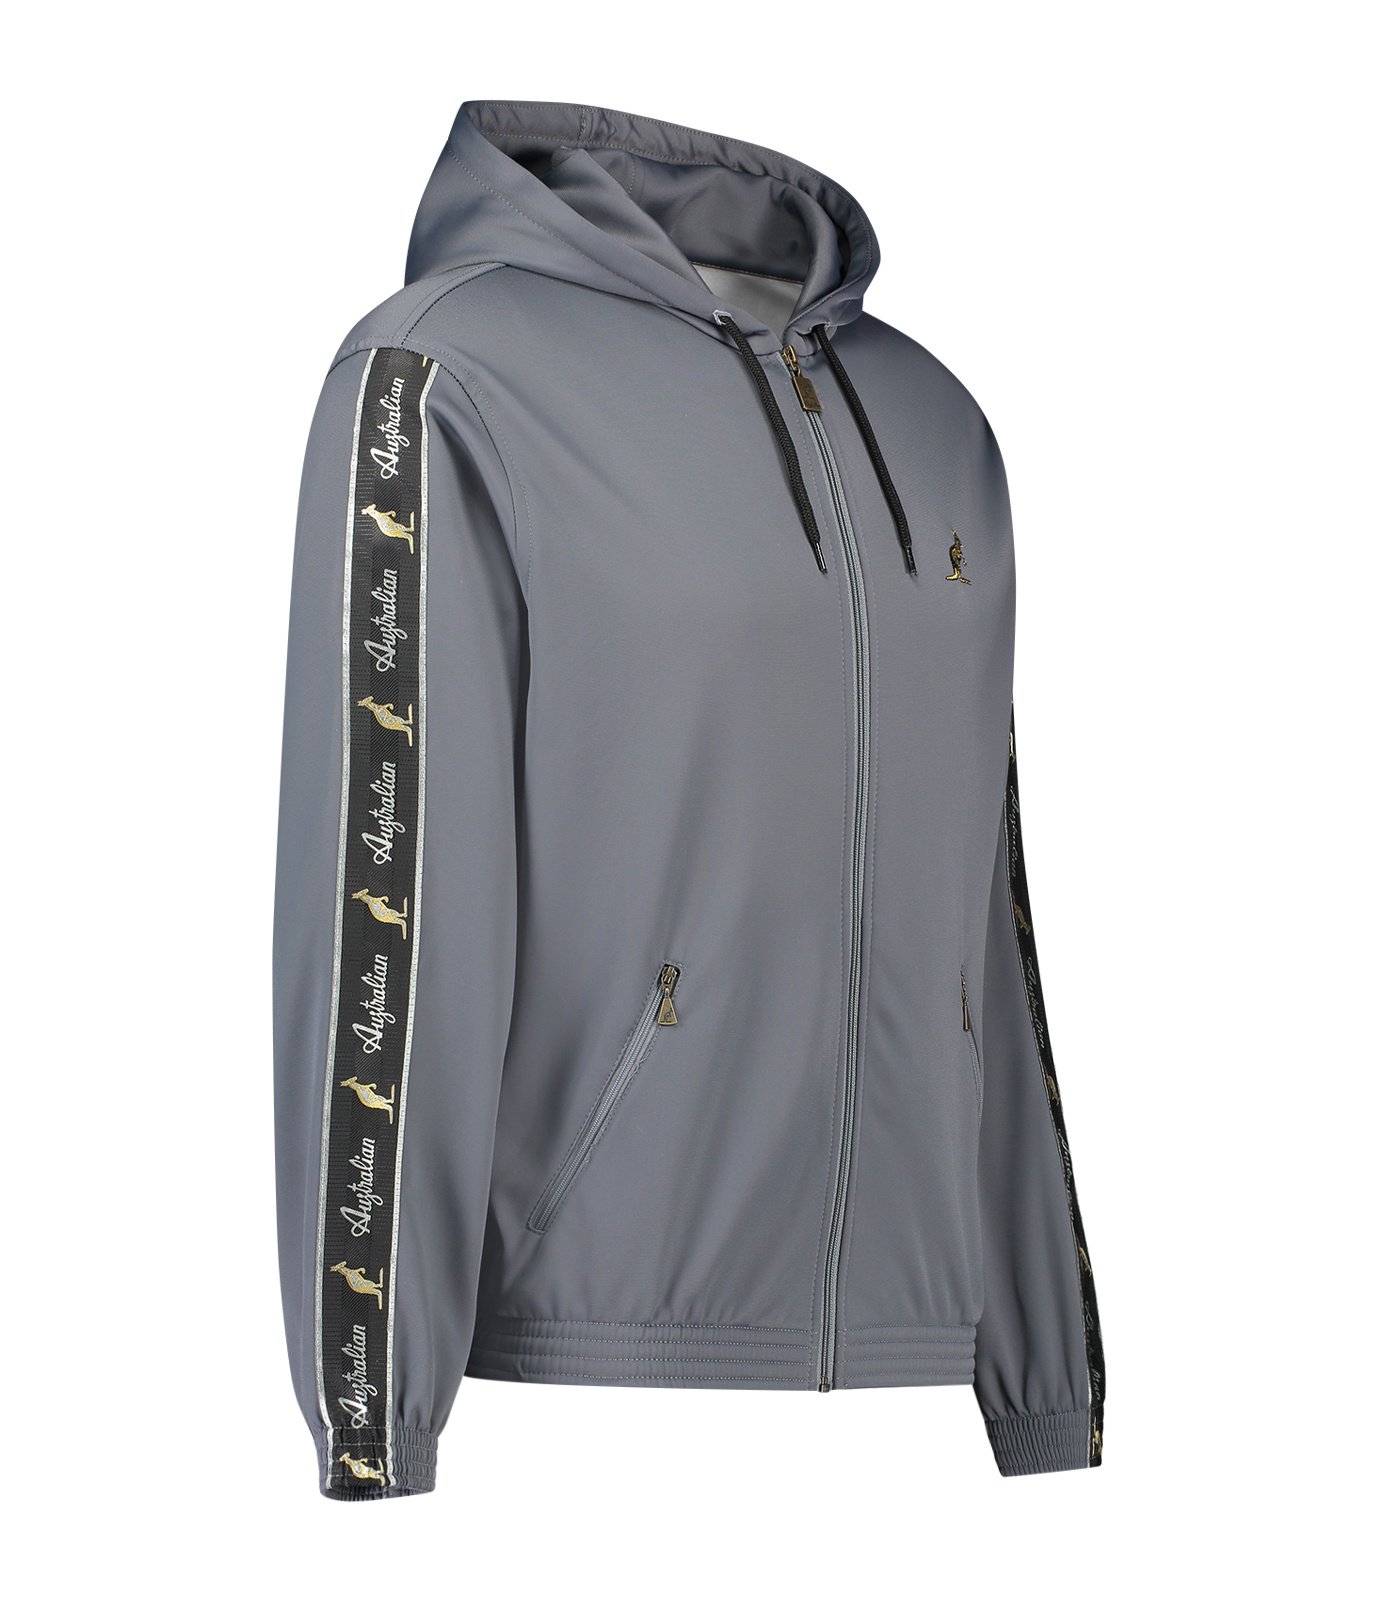 Australian Hooded Trainingsjacke mit Streifen (Steel Grey/Black) -  Gabberwear | Trainingsjacken